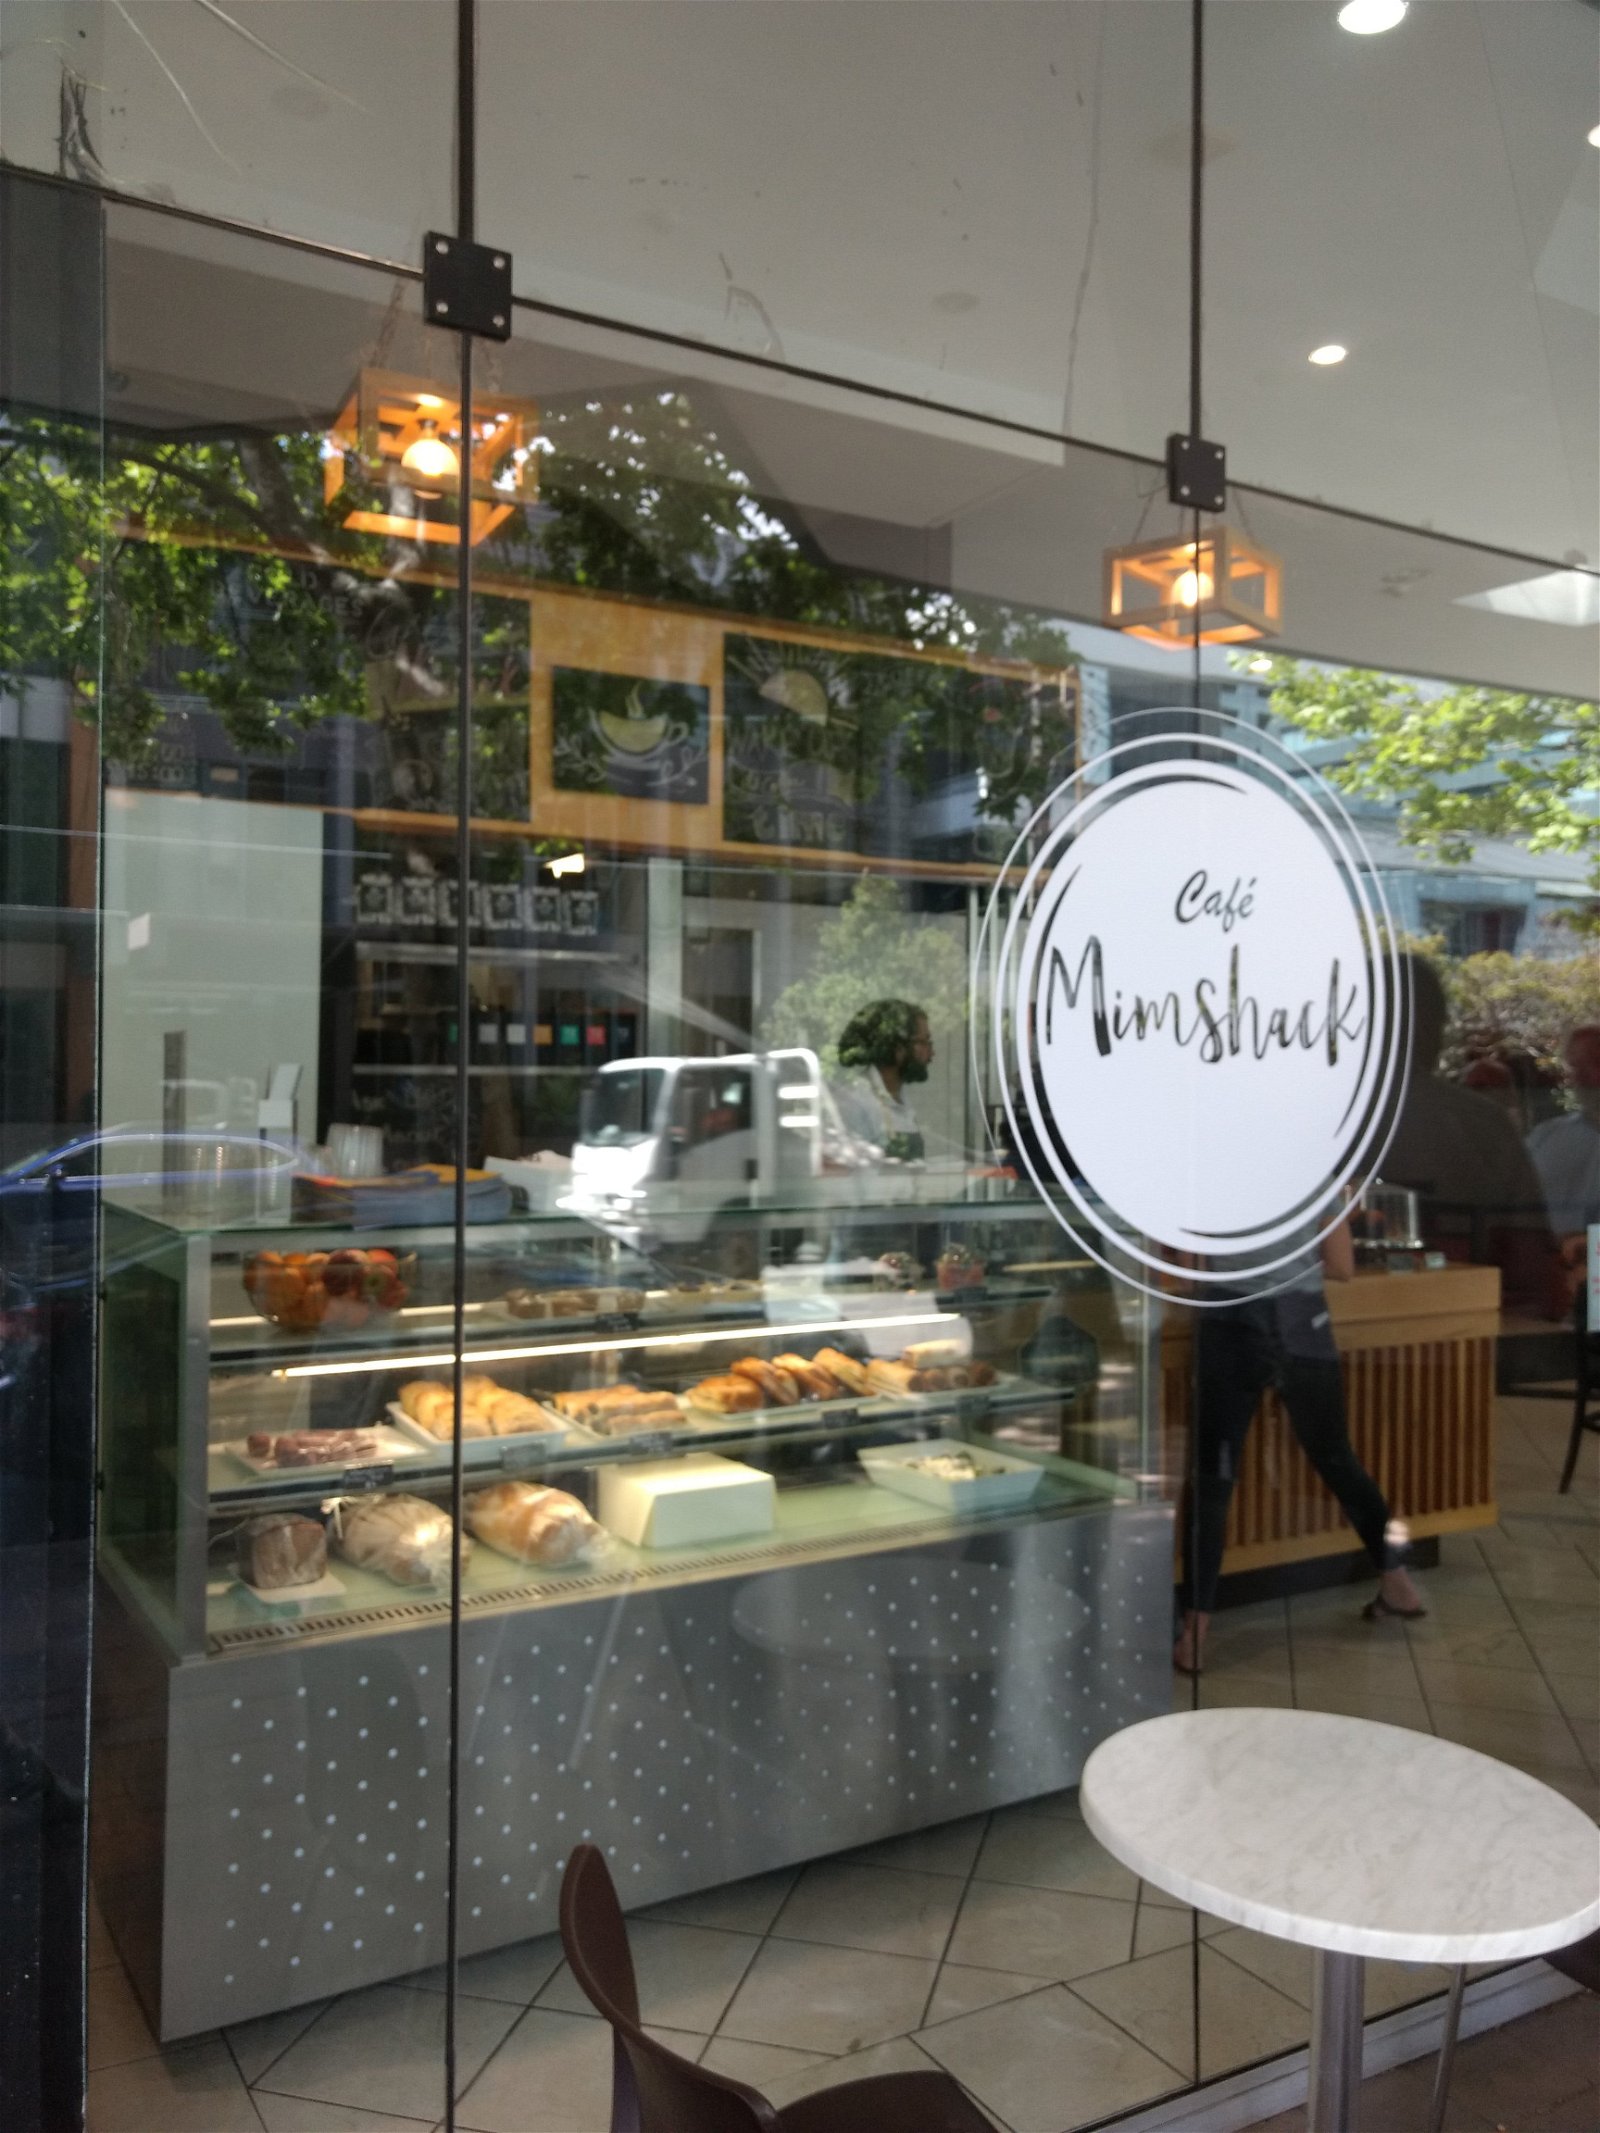 Cafe Mimshack - Food Delivery Shop